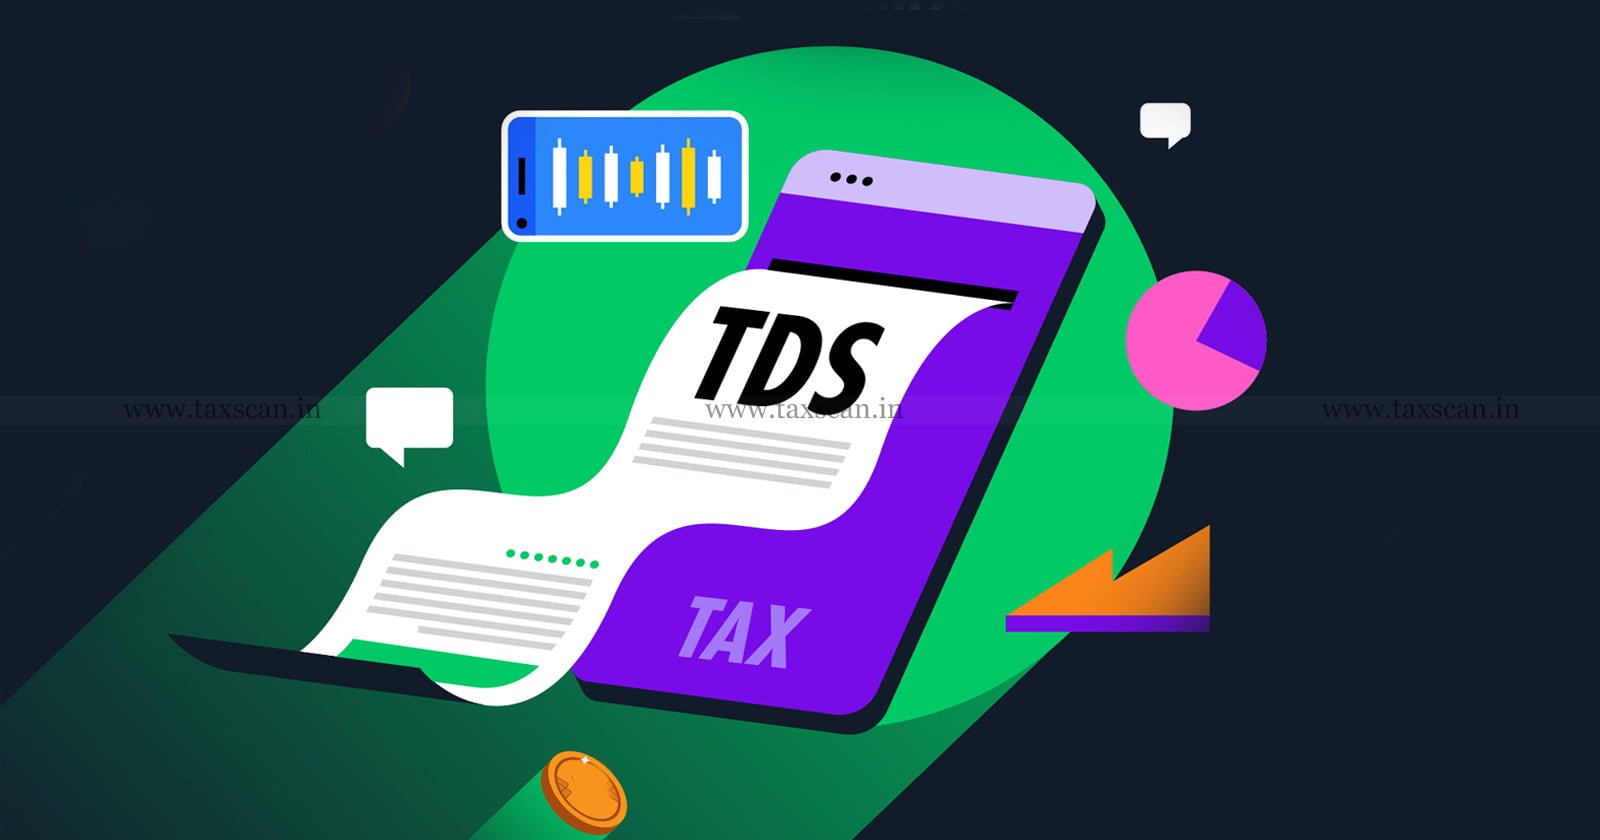 Interest - Deposit - Income - Tax - TDS - ITAT - TAXSCAN